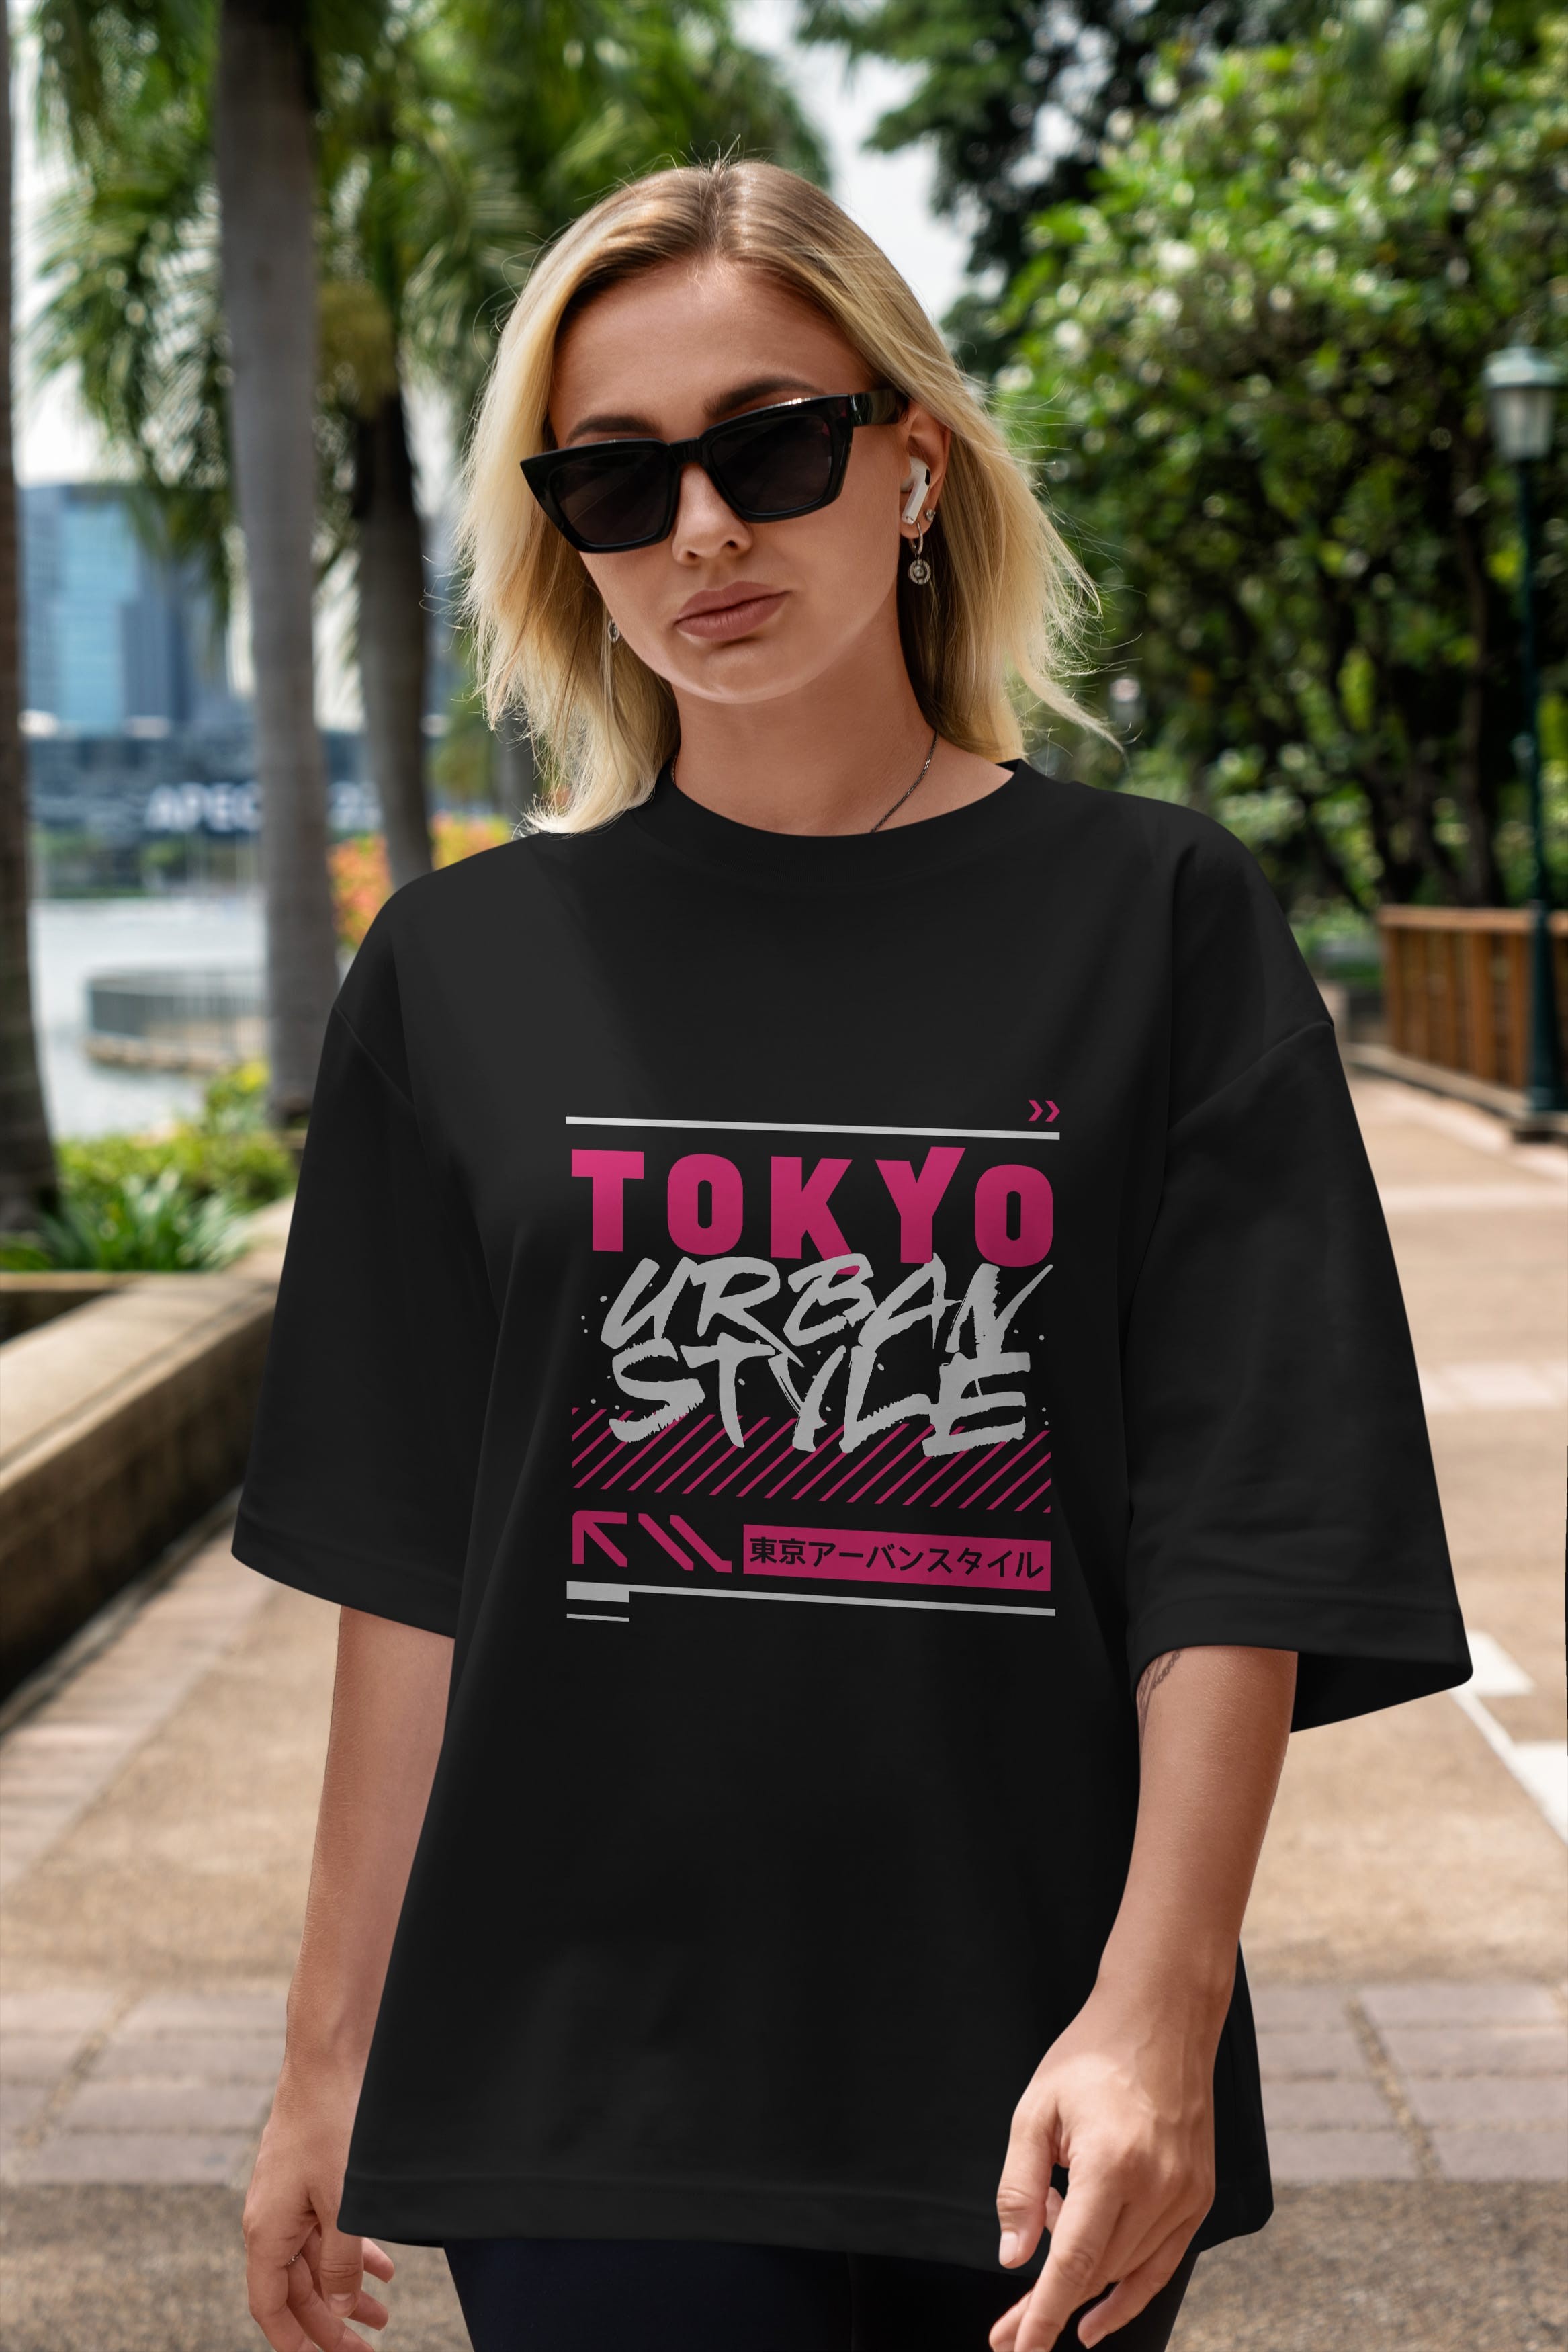 Tokyo Urban Style Ön Baskılı Oversize t-shirt Erkek Kadın Unisex